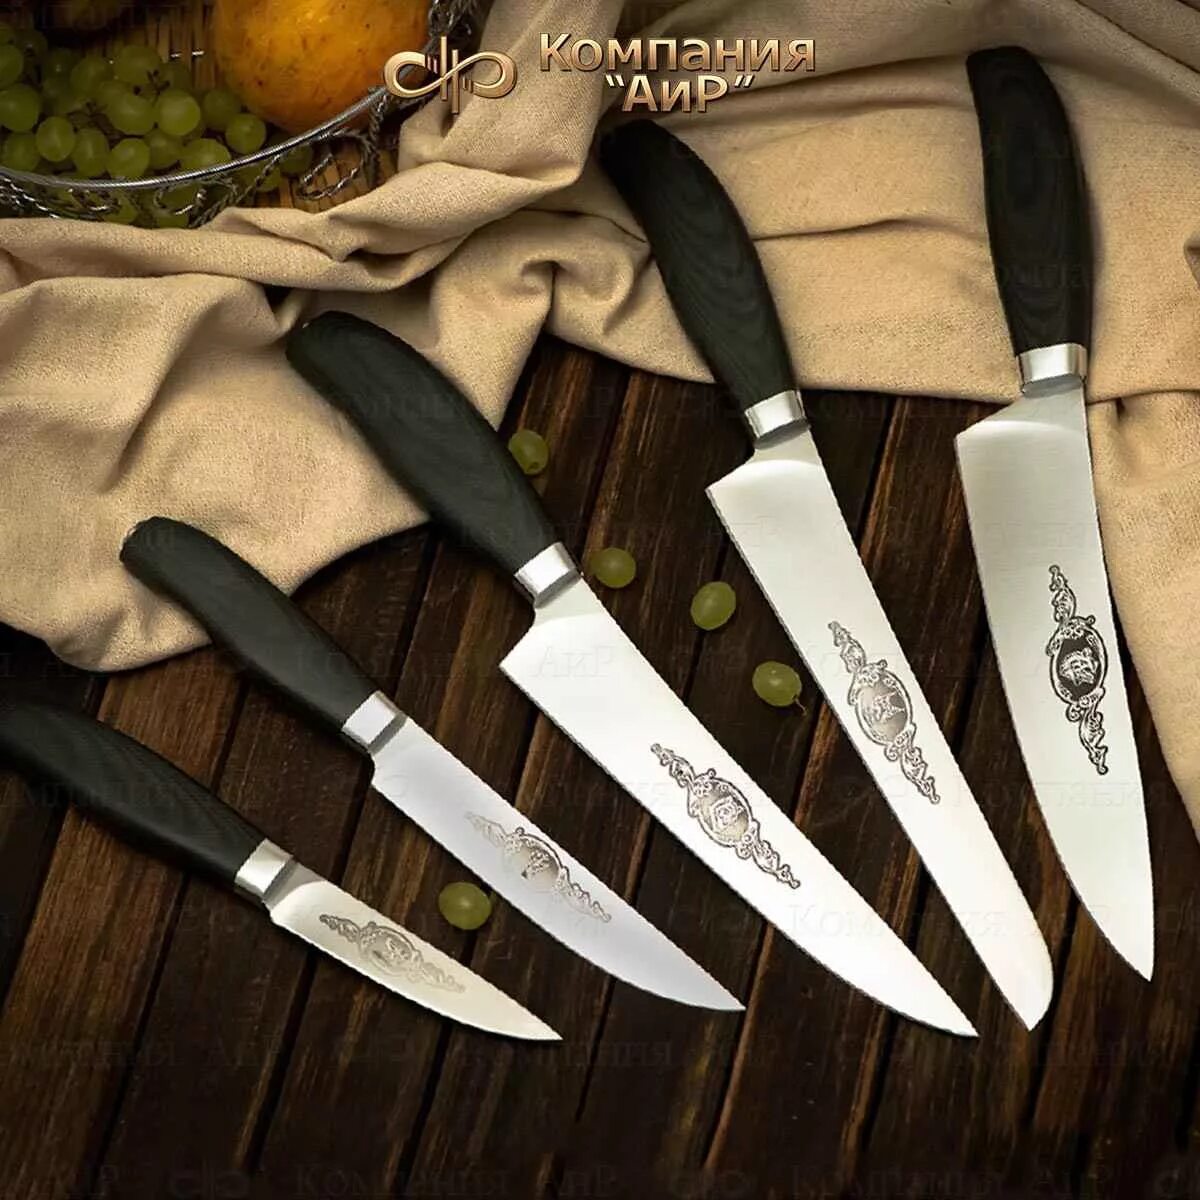 Ножи аир купить. Ножи АИР Златоуст. Нож кухонный км-7035. Поварская тройка ножей Златоуст. Поварской нож "Phantom Chef’s Knife".